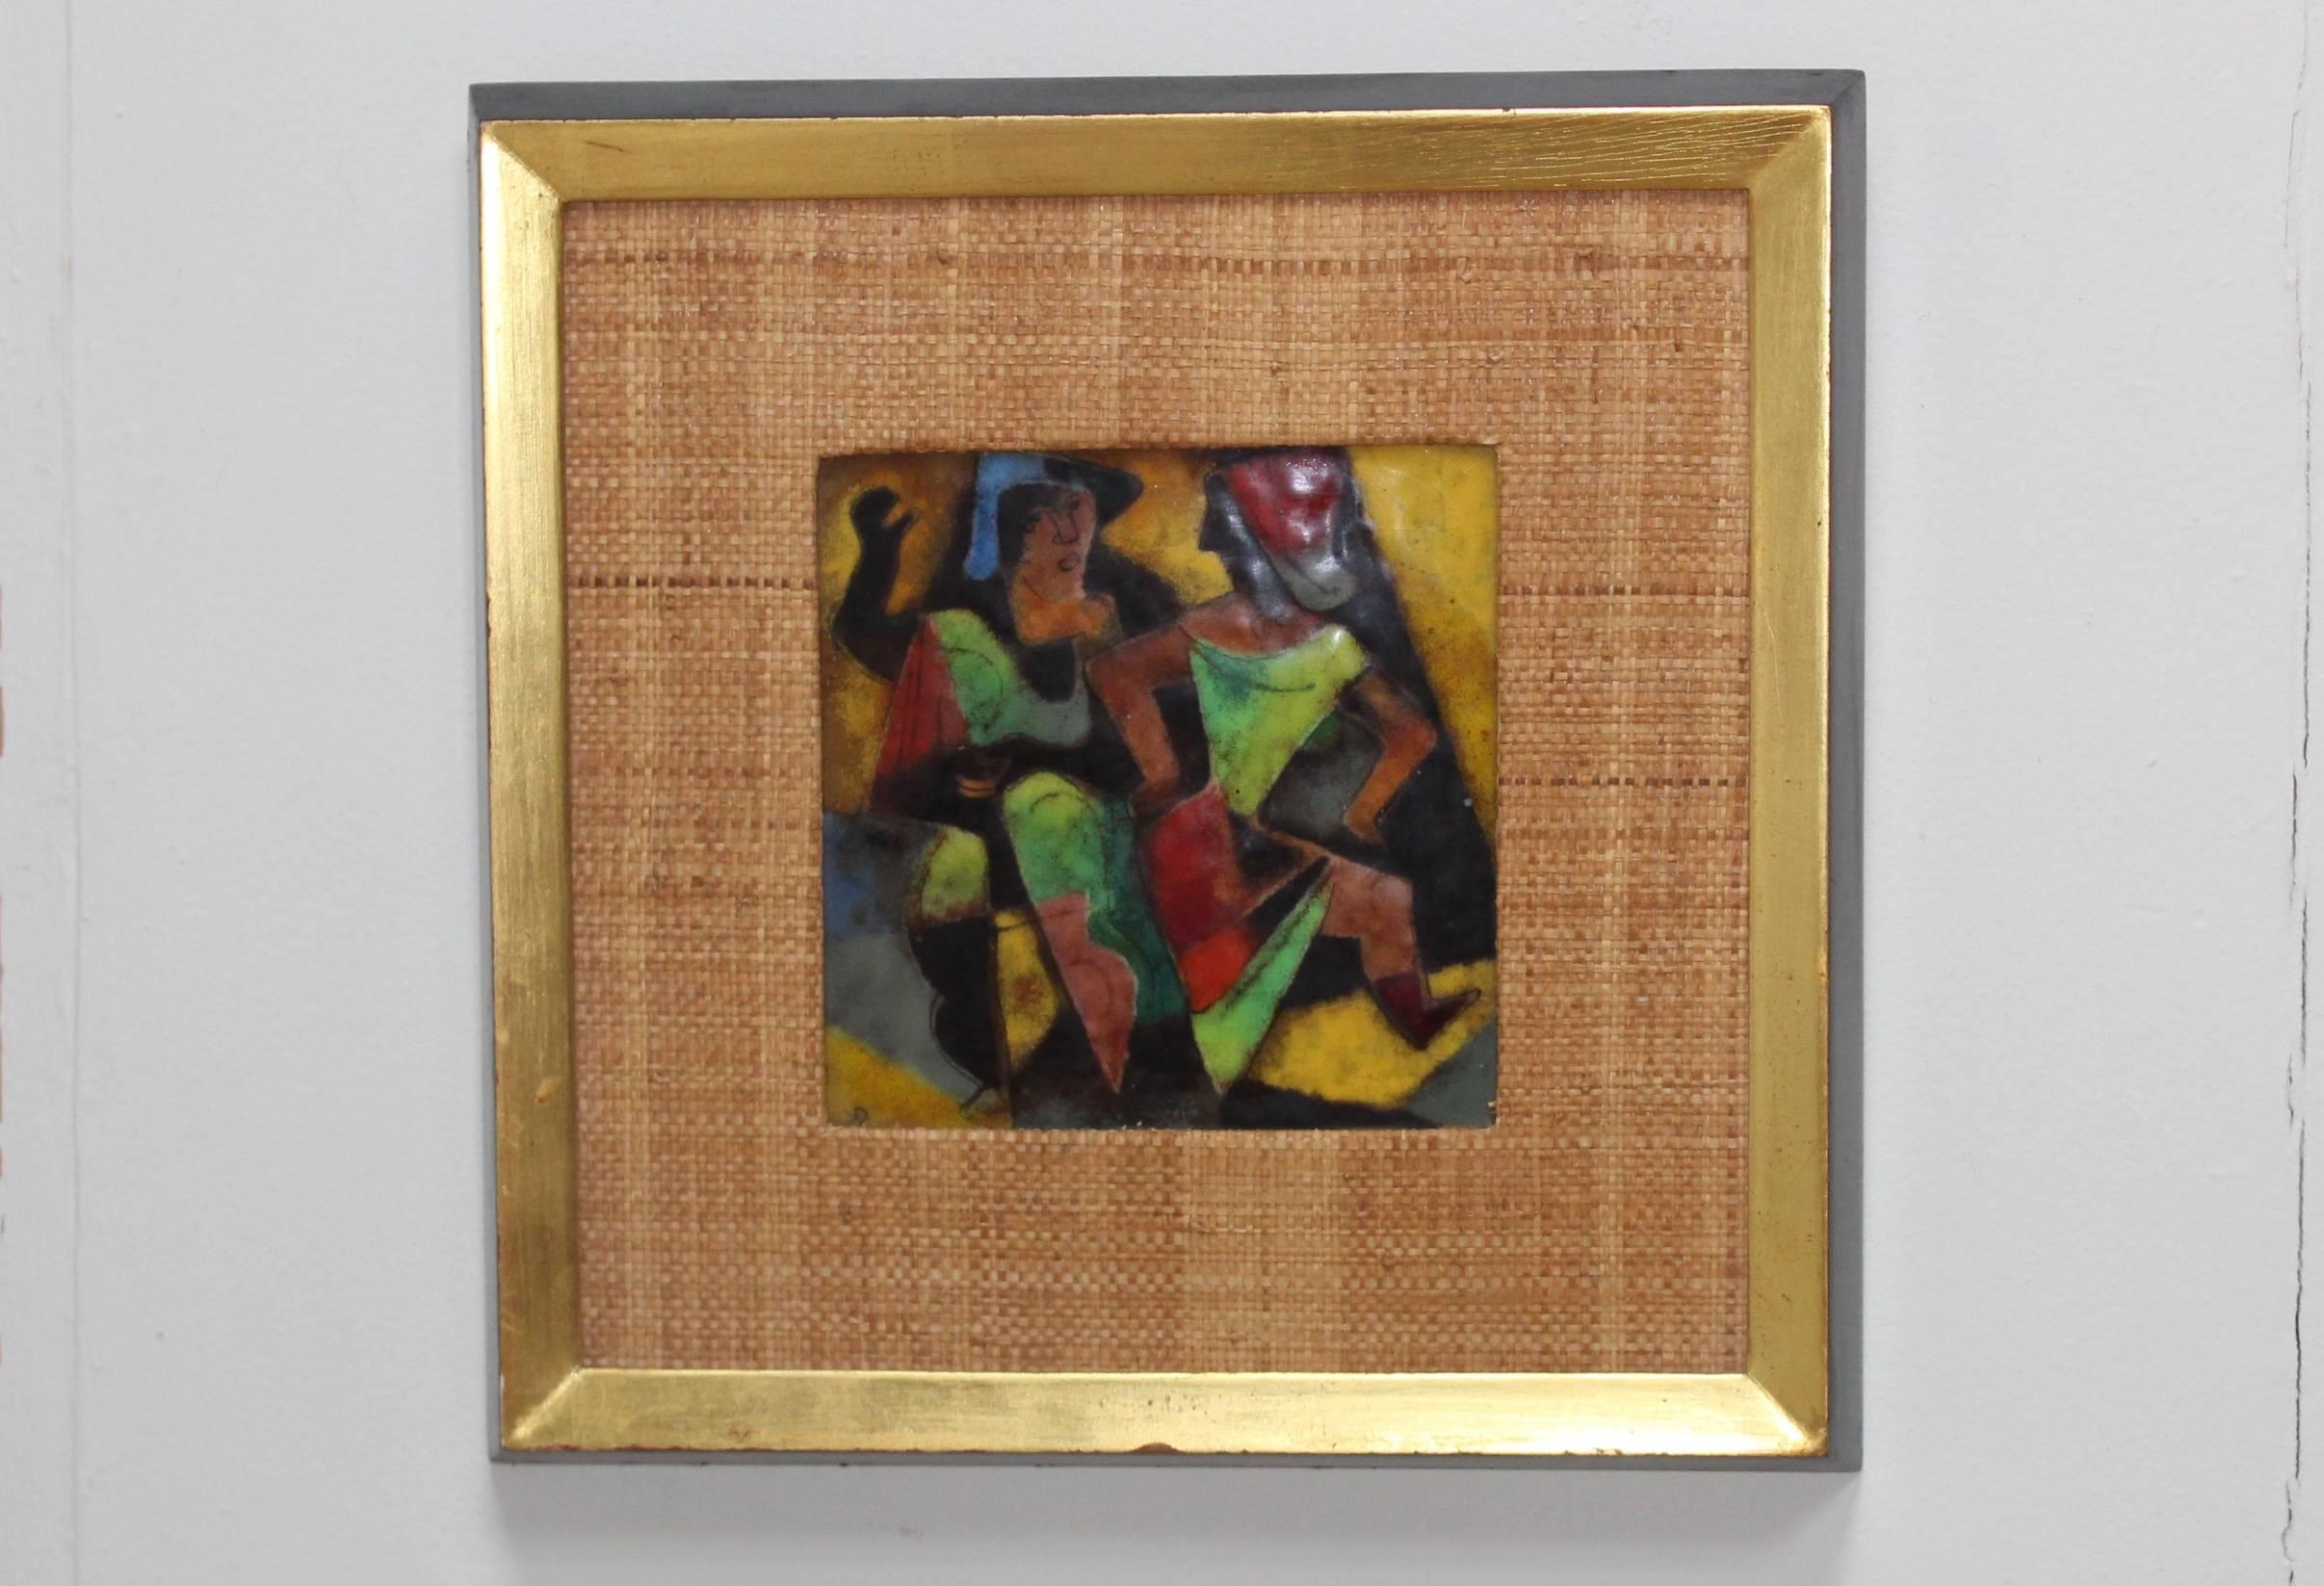 œuvre d'art moderne des années 1950 en émail sur cadre en cuivre de l'artiste américain Karl Drerup.

Une collection rare de 5 pièces est disponible.